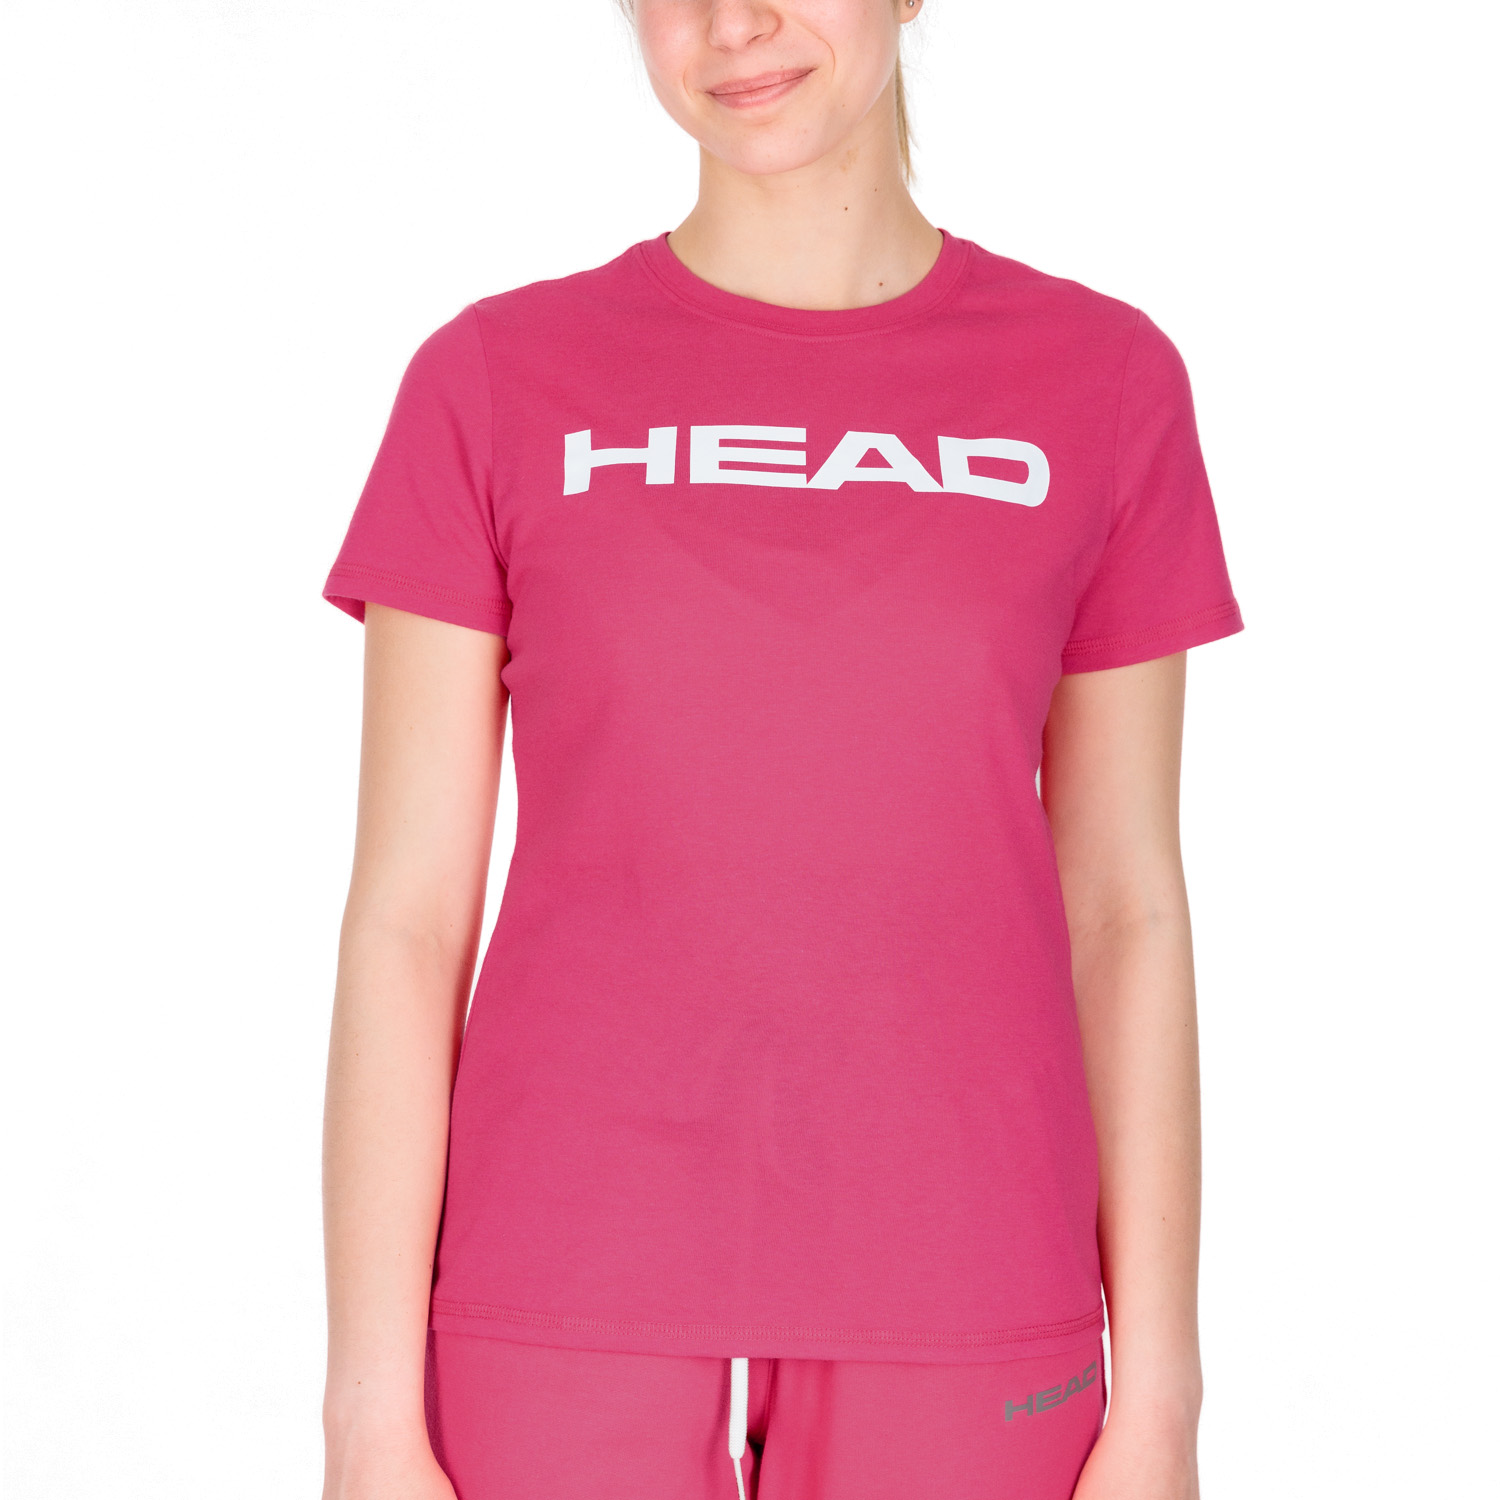 Visita lo Store di HeadHead Club 22 Tech T-Shirt Women Club 22 Tech Maglietta Donne Donna 